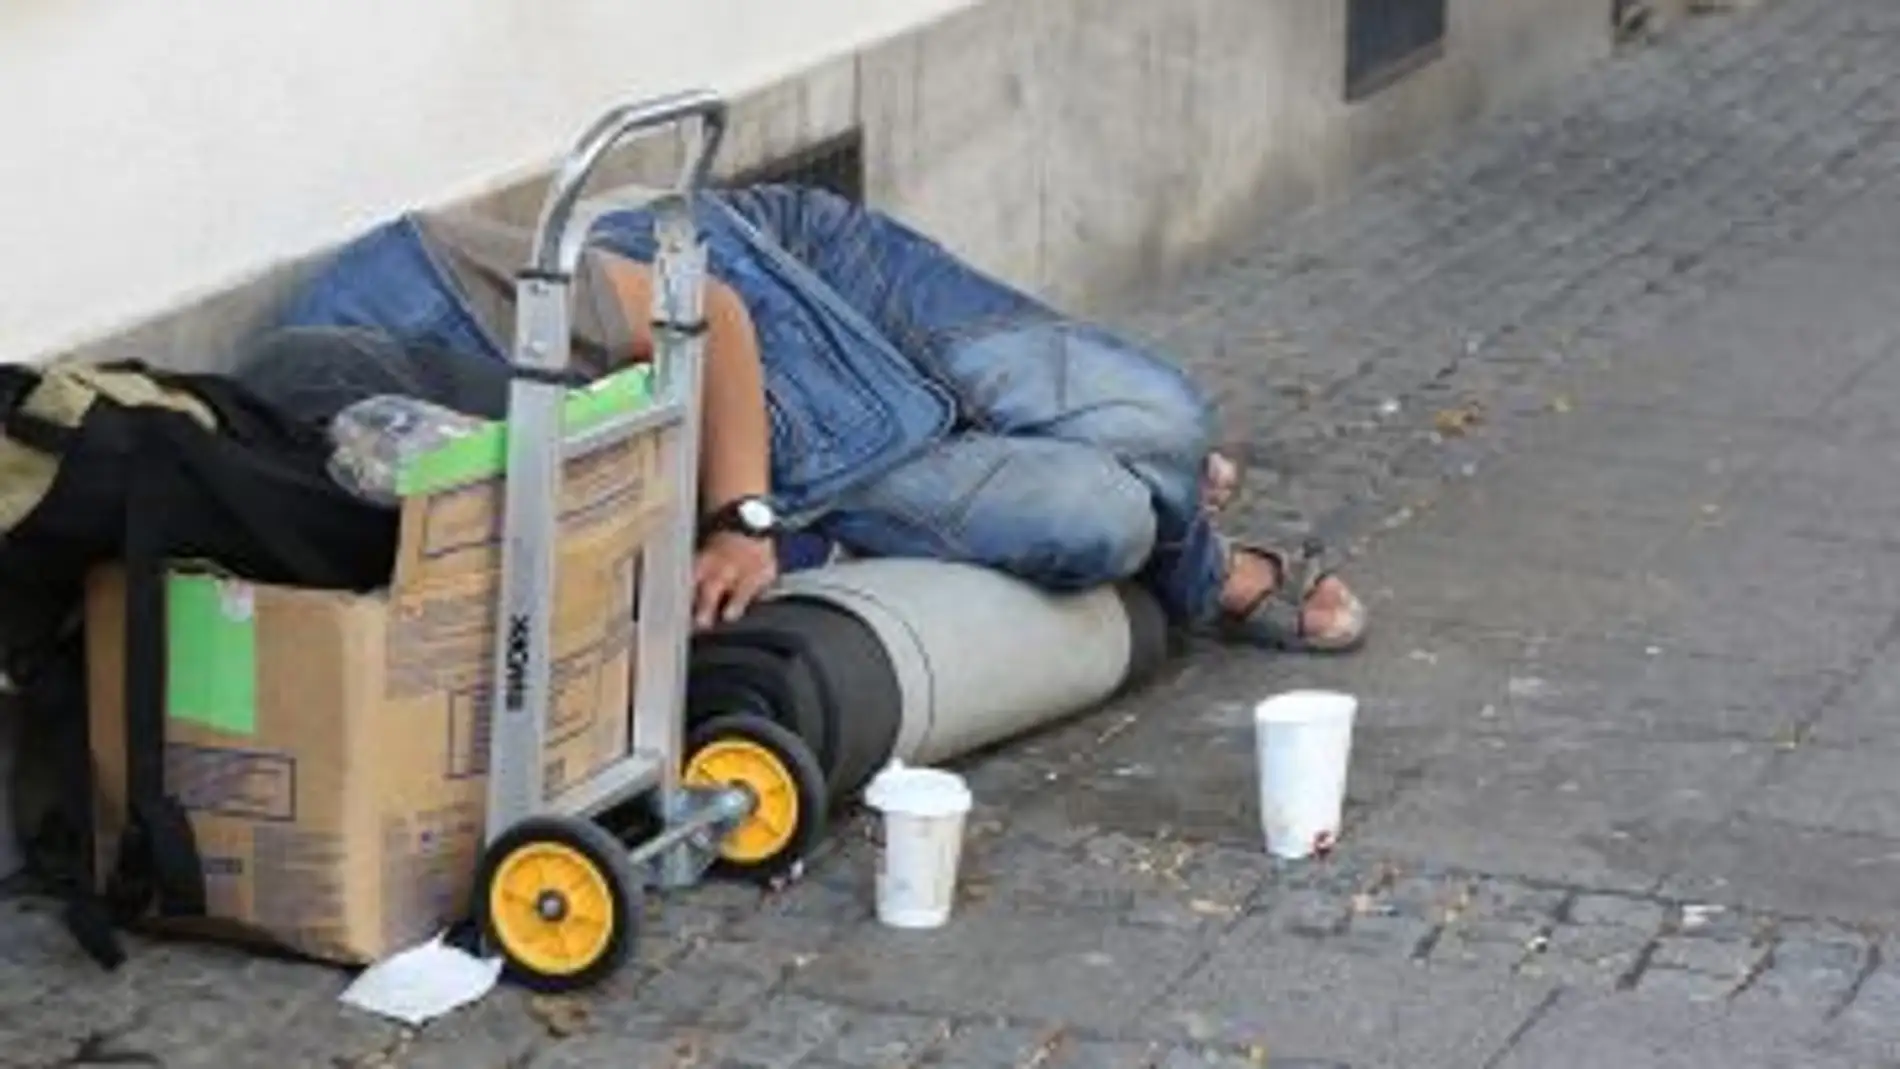 Un "sin techo" durmiendo en la calle